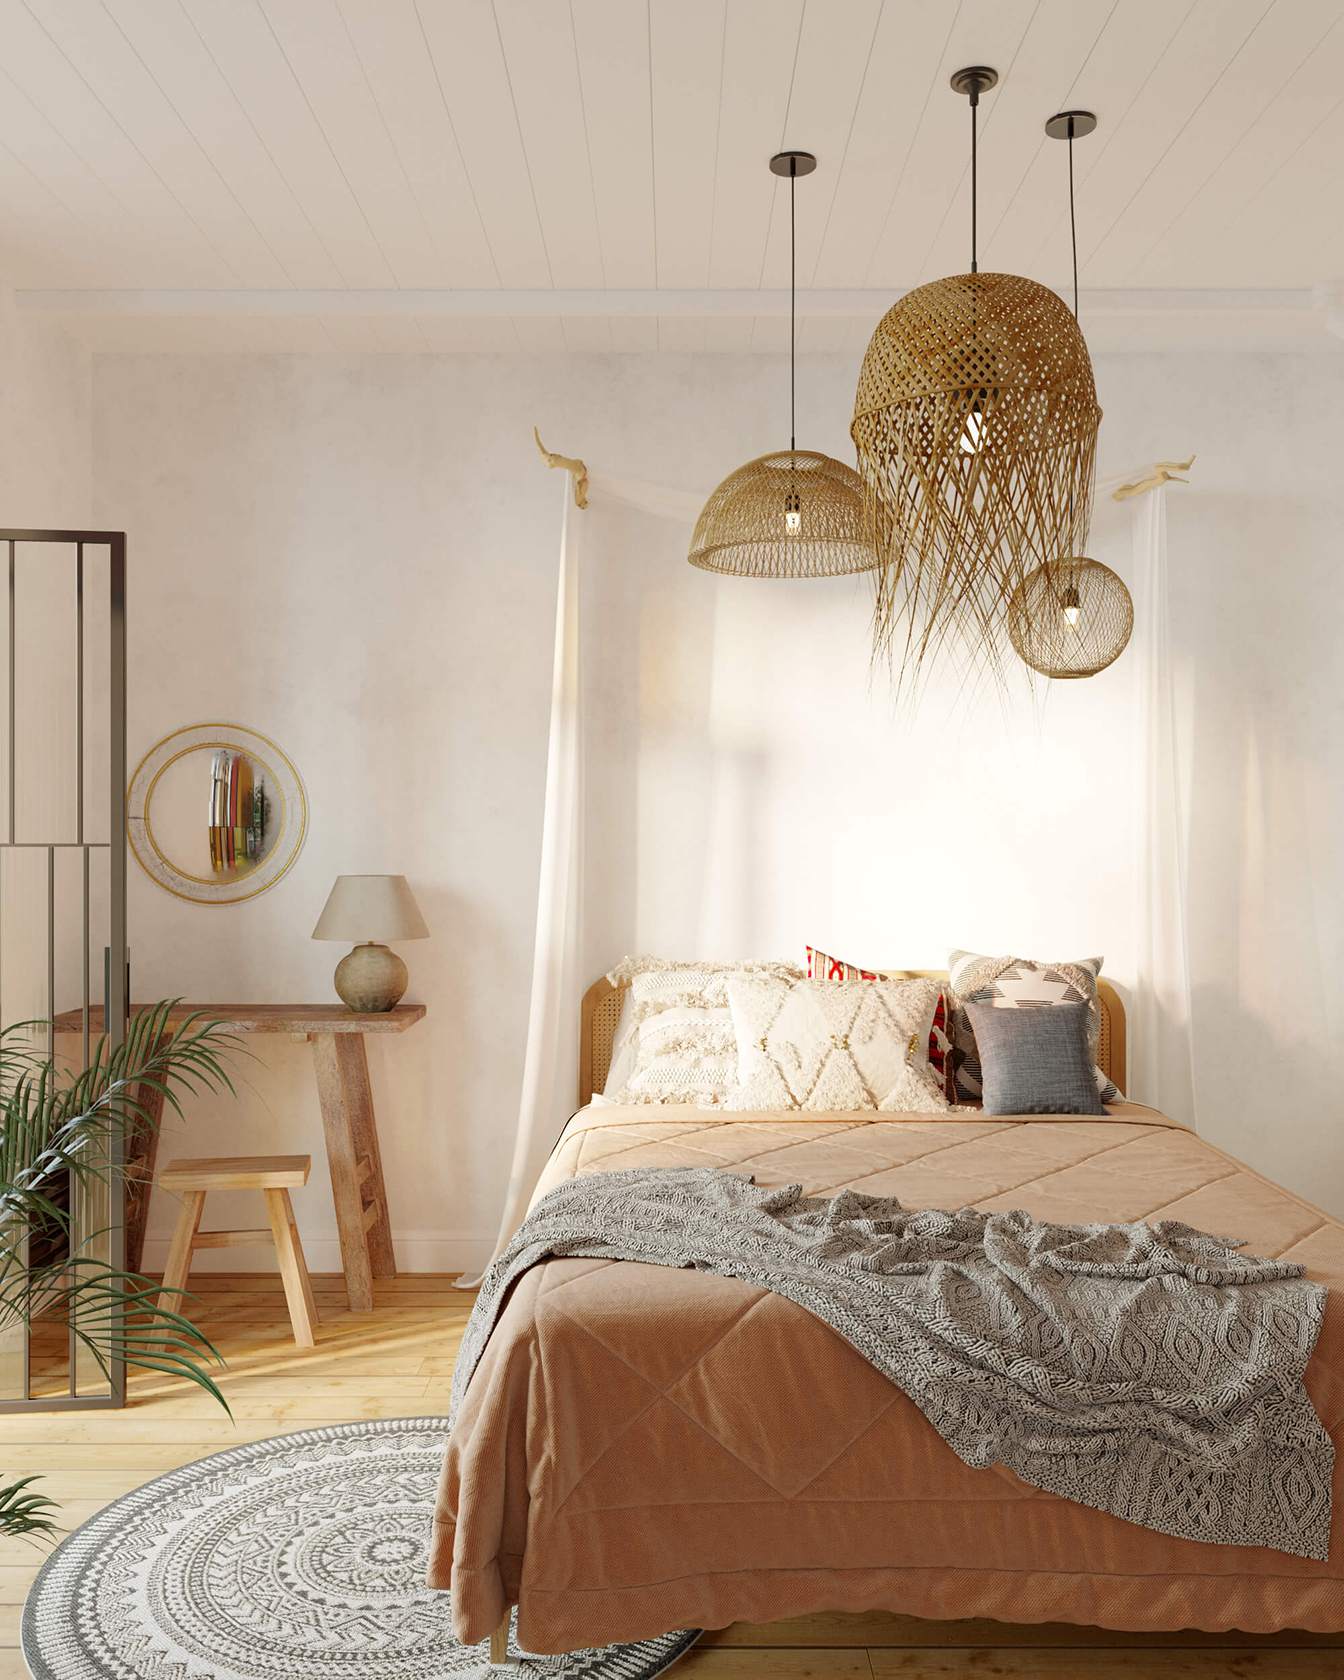 Стильная спальня в стиле Бохо. Соломенные светильники, массивное дерево, разнообразный текстиль и аутентичный коврик